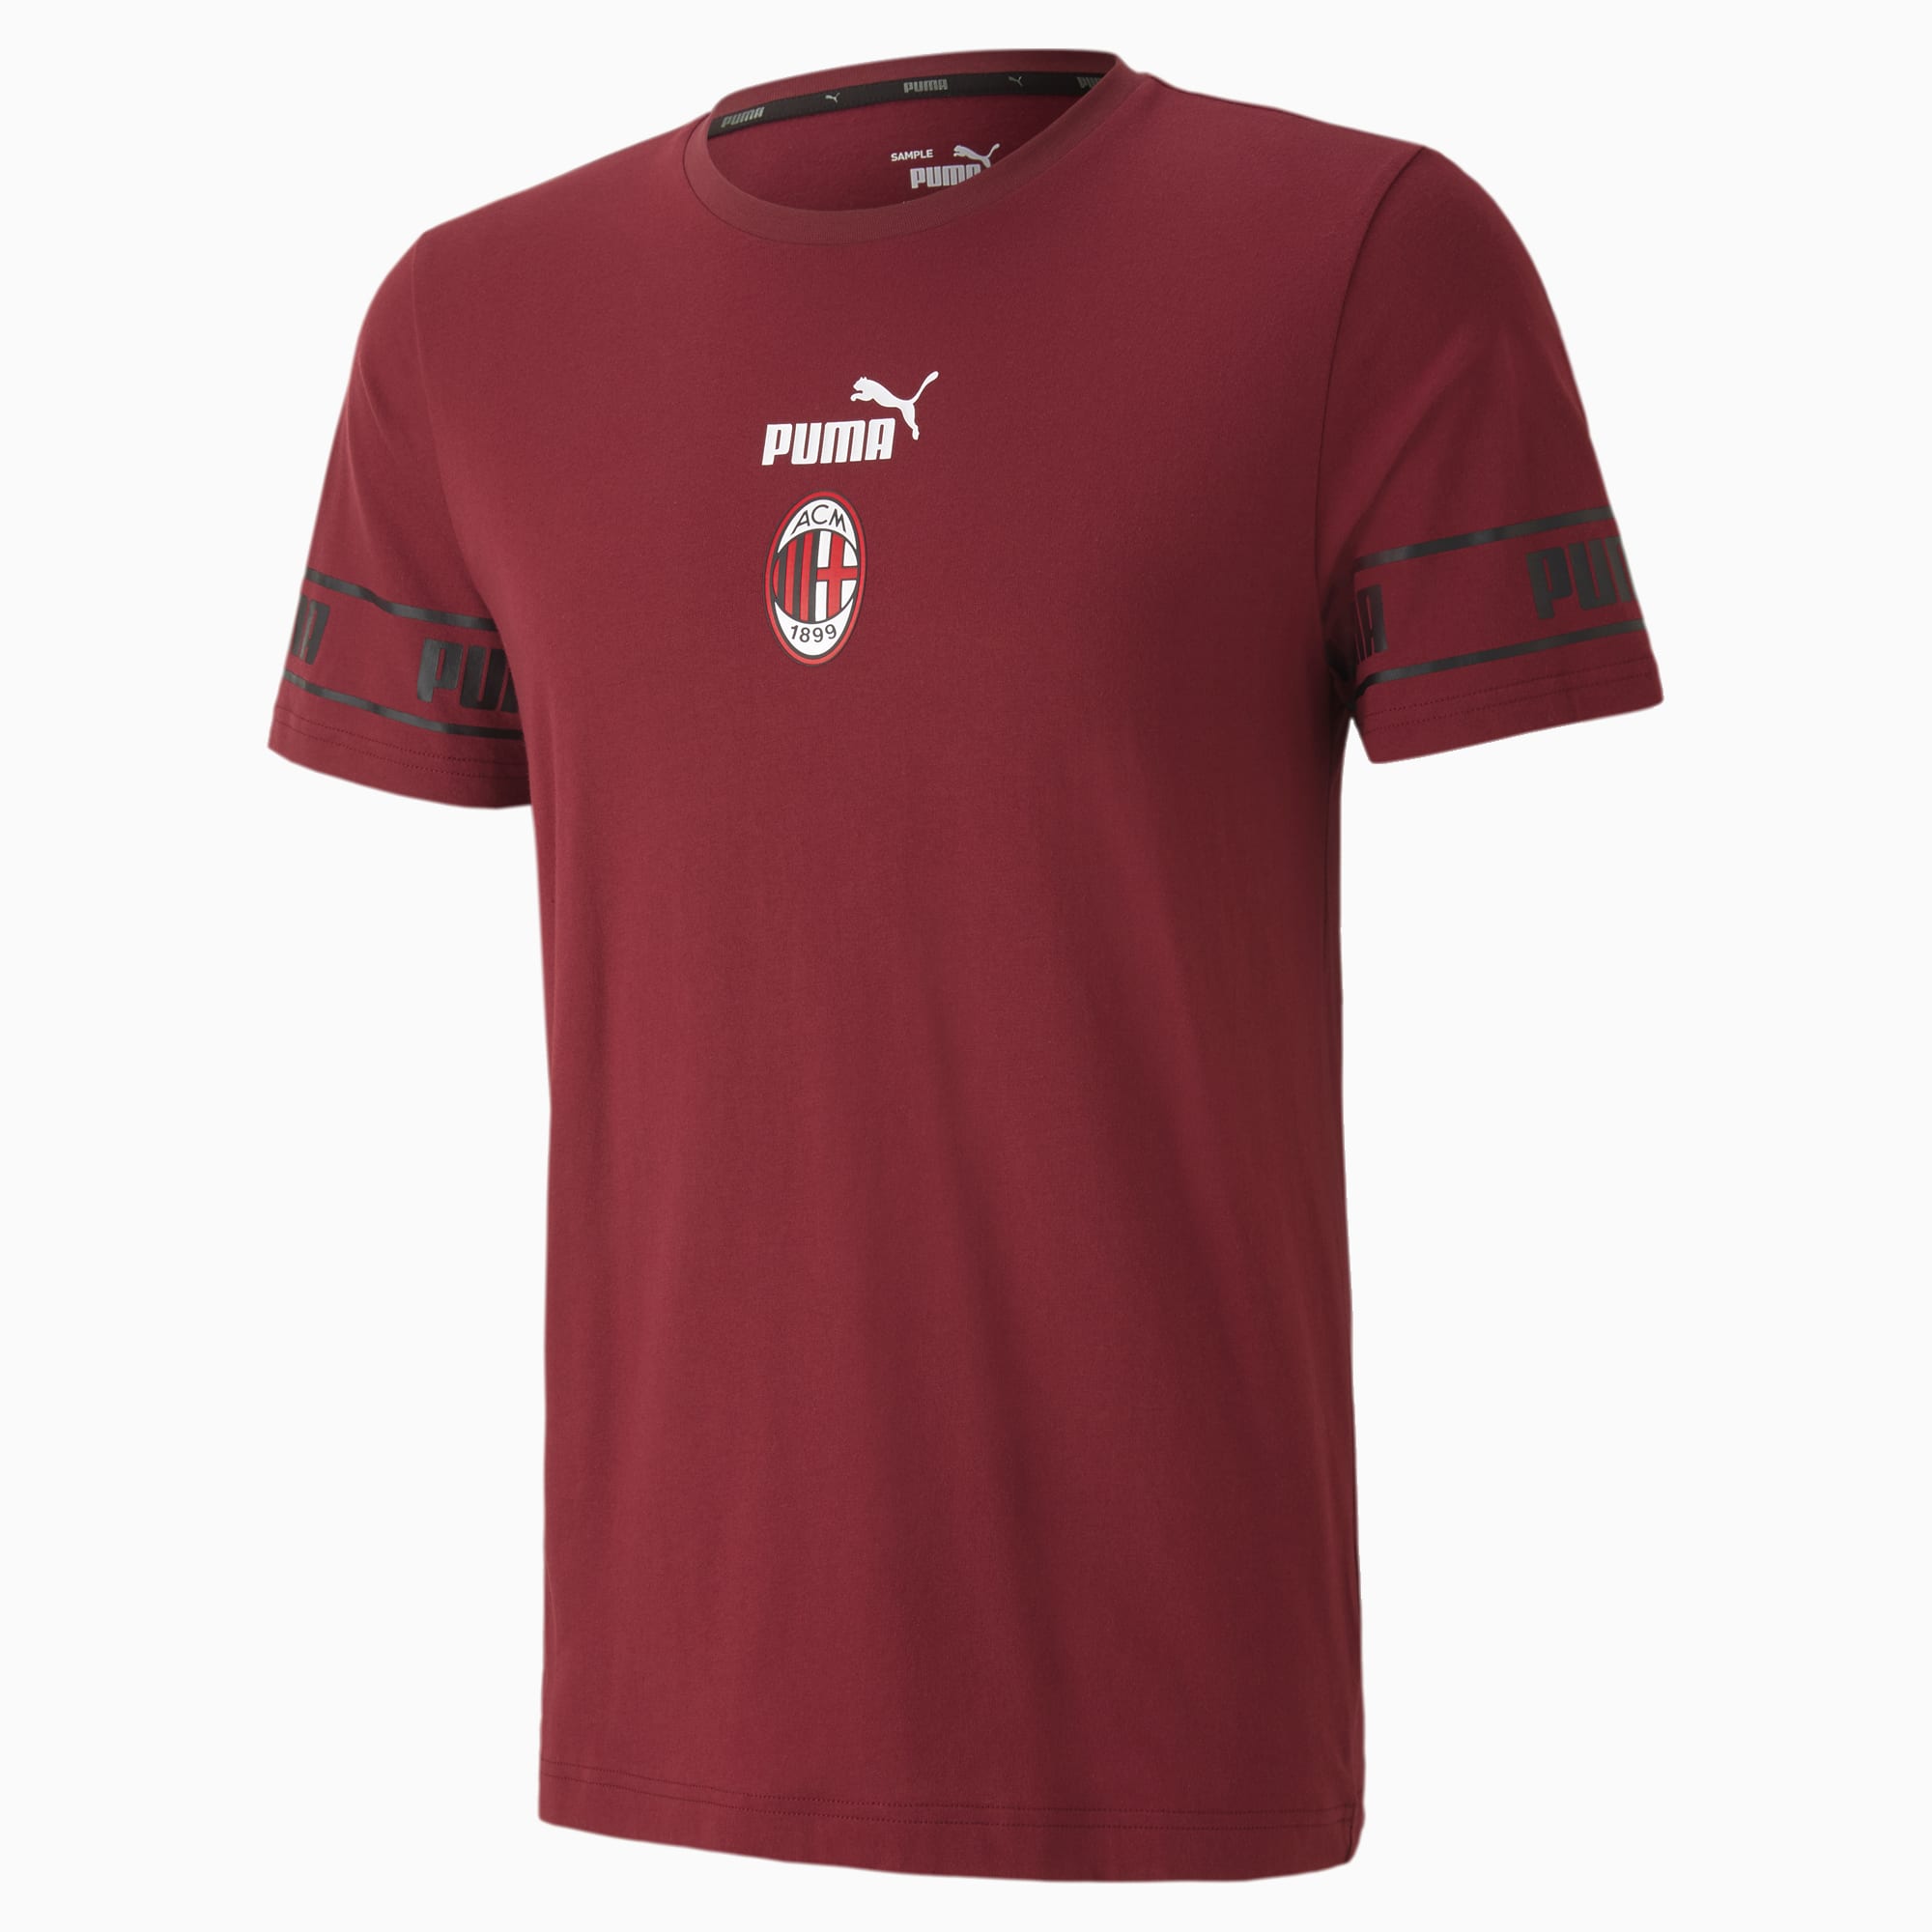 Image of PUMA AC Milan ftblCulture Herren Fußball T-Shirt II | Mit Aucun | Rot/Schwarz | Größe: S